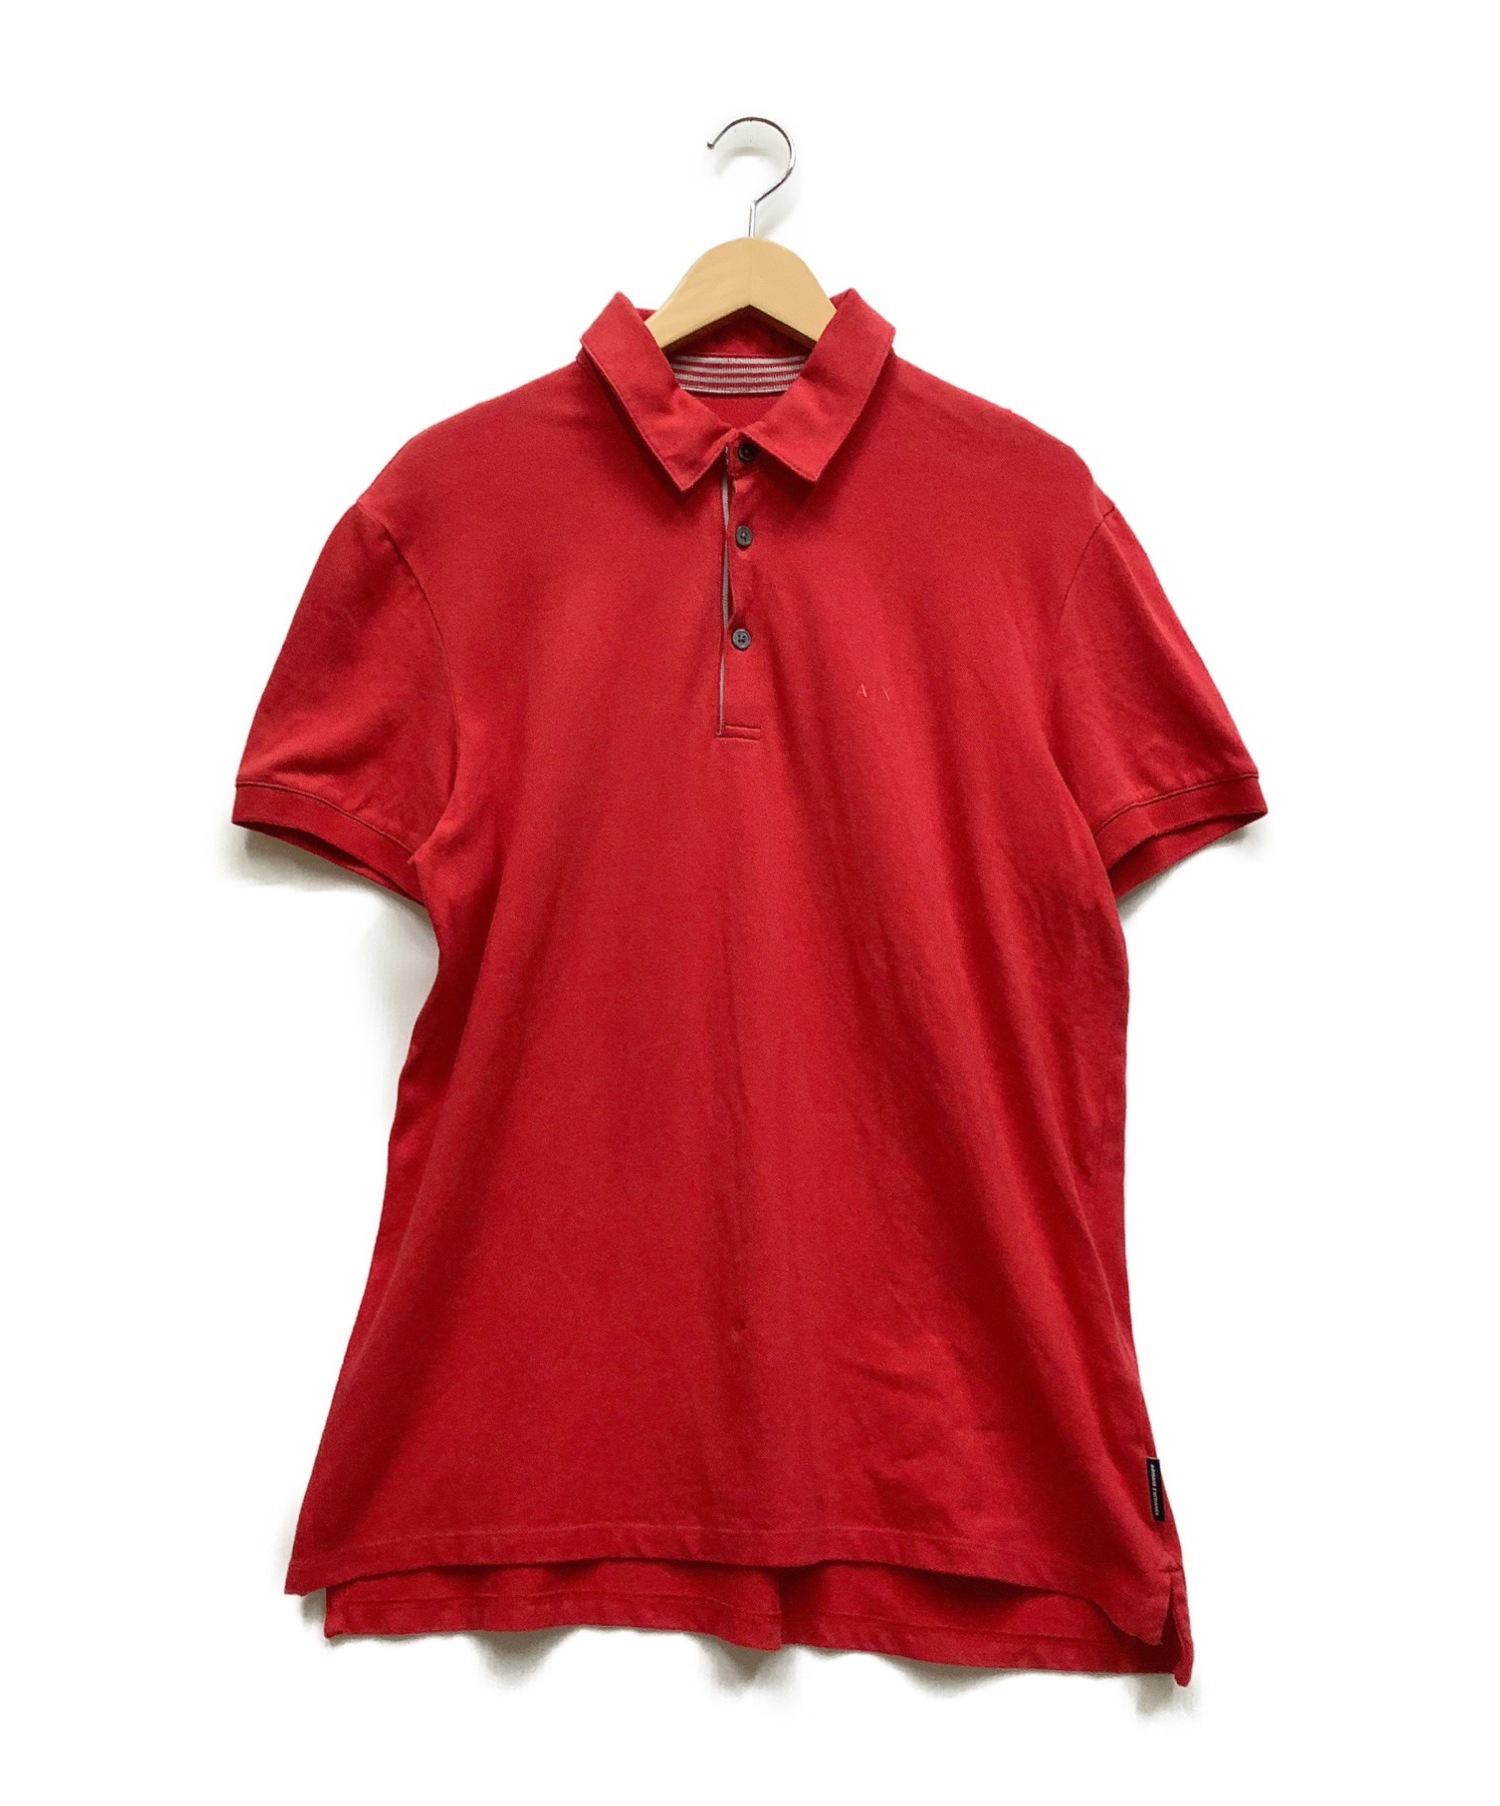 ARMANI EXCHANGE (アルマーニエクスチェンジ) ポロシャツ レッド サイズ:L